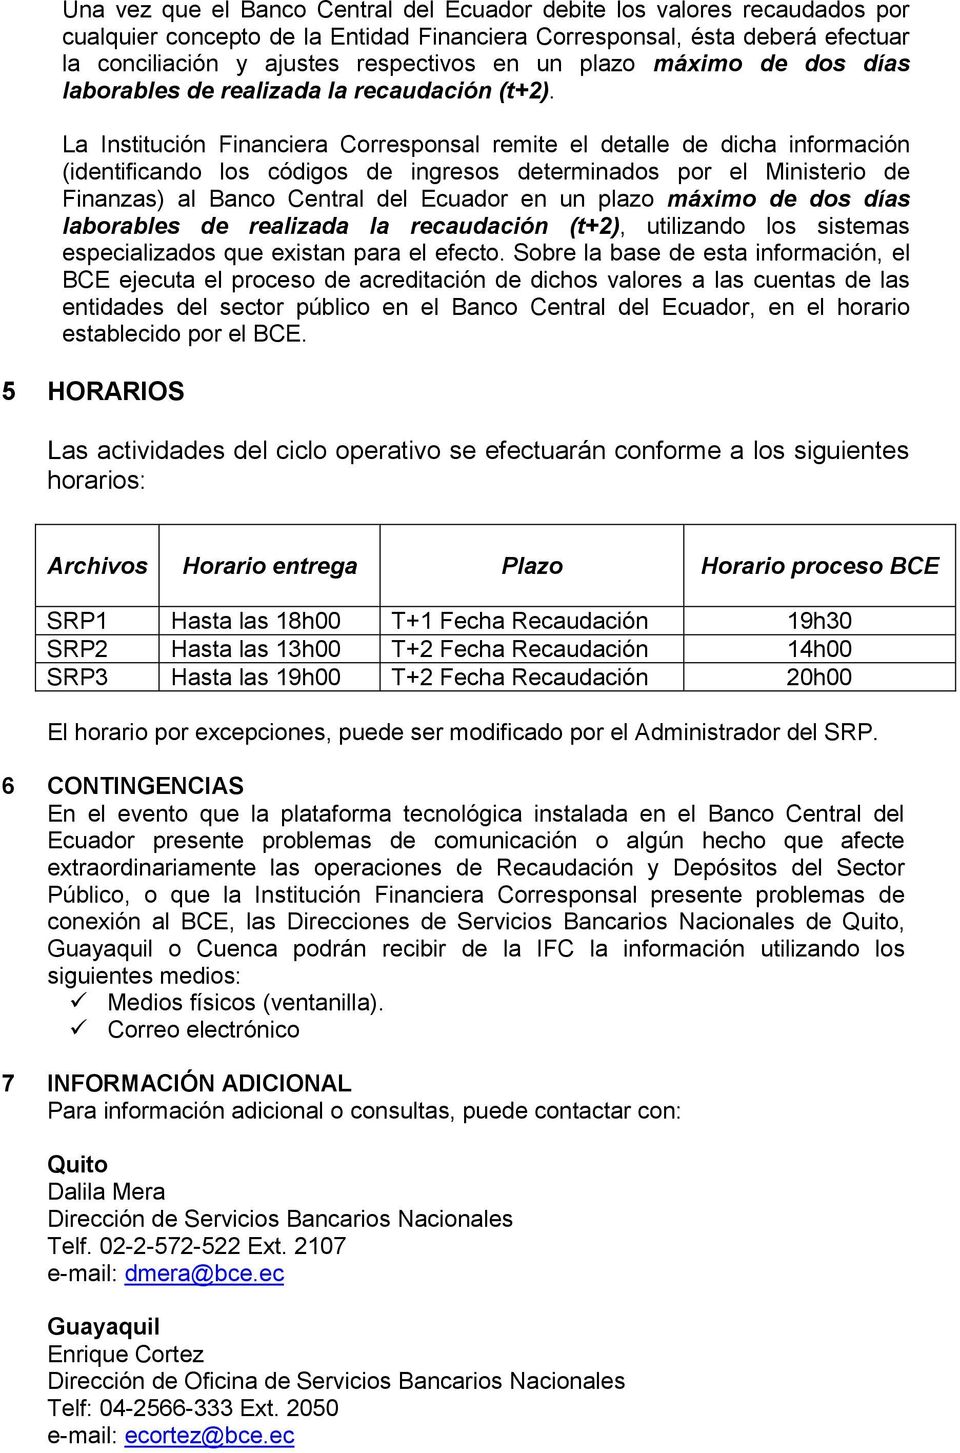 La Institución Financiera Corresponsal remite el detalle de dicha información (identificando los códigos de ingresos determinados por el Ministerio de Finanzas) al Banco Central del Ecuador en un